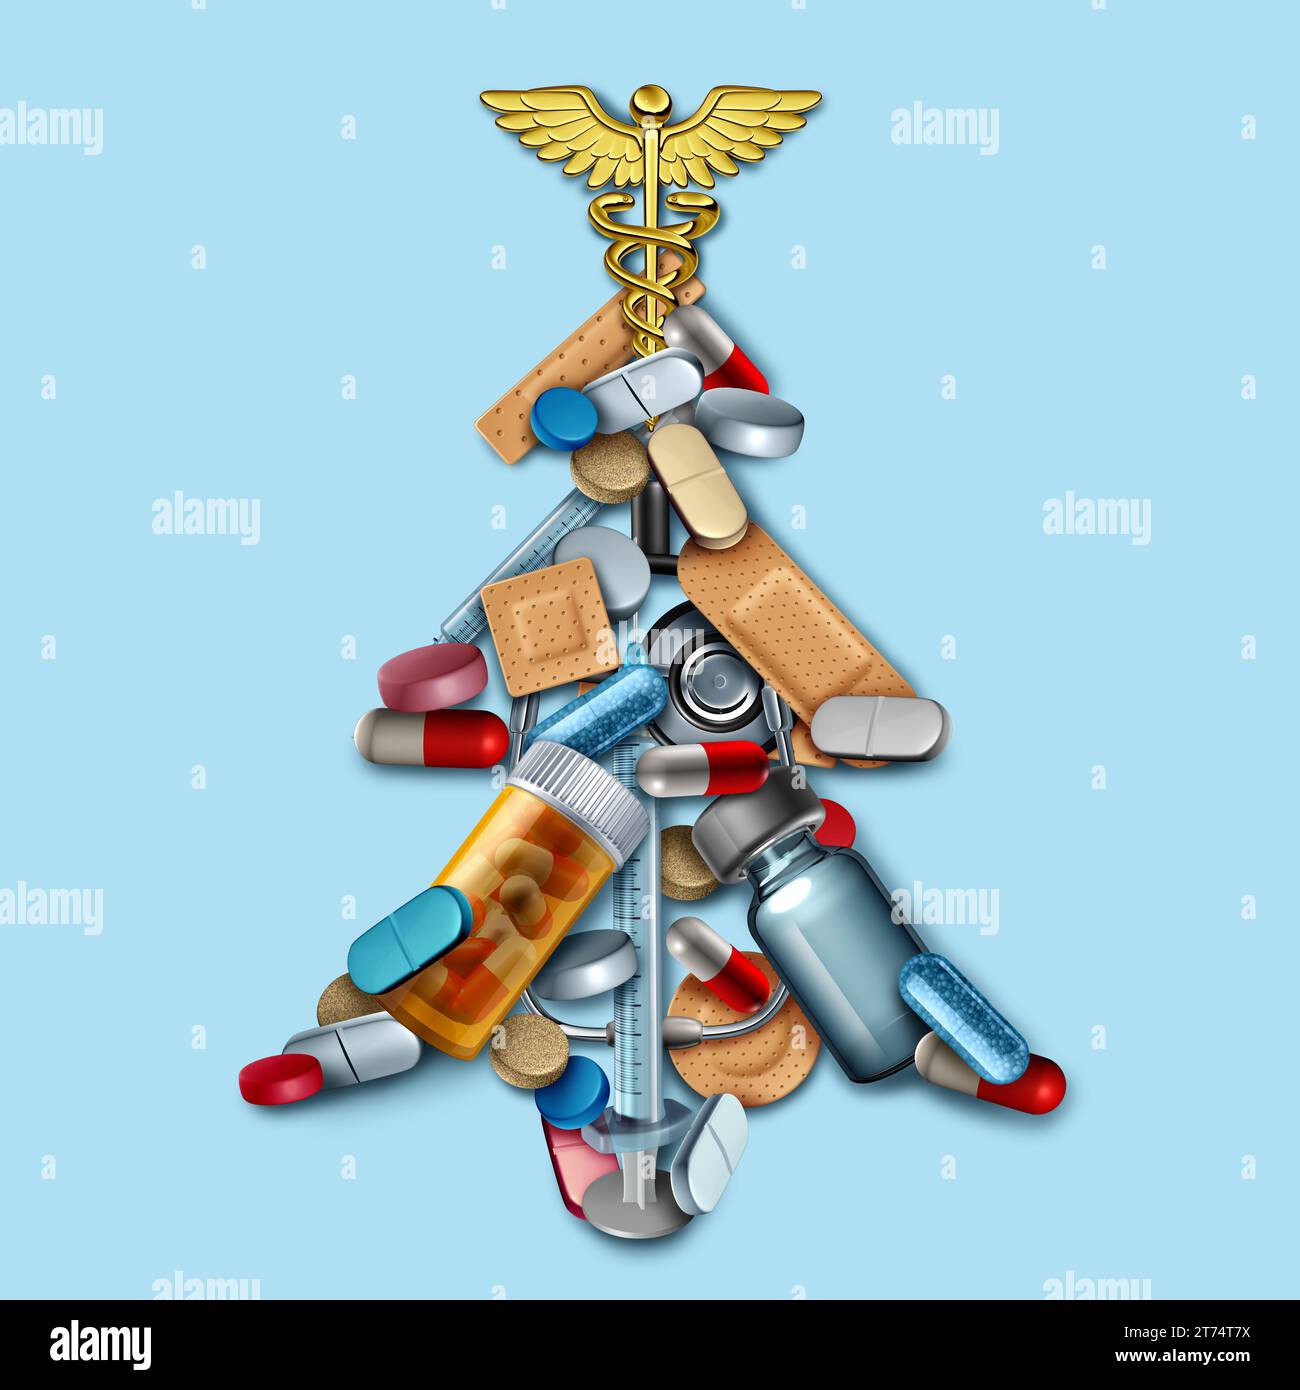 Vacanze di Natale mediche come concetto di assistenza sanitaria con attrezzature mediche e medicina che celebrano le vacanze invernali come simbolo festivo di Capodanno Foto Stock